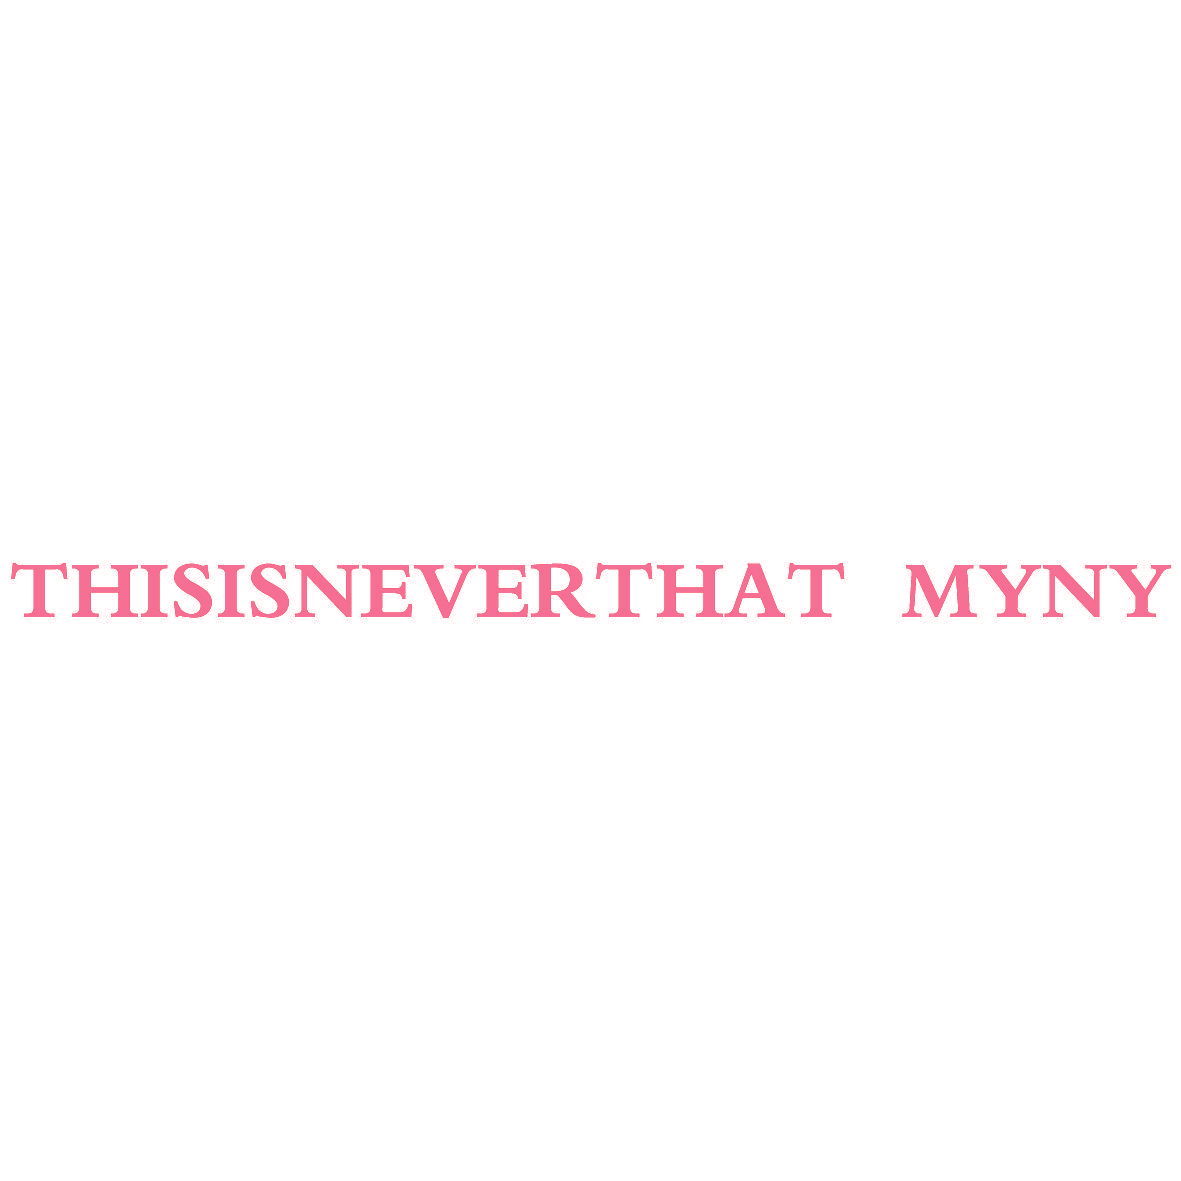 THISISNEVERTHAT MYNY